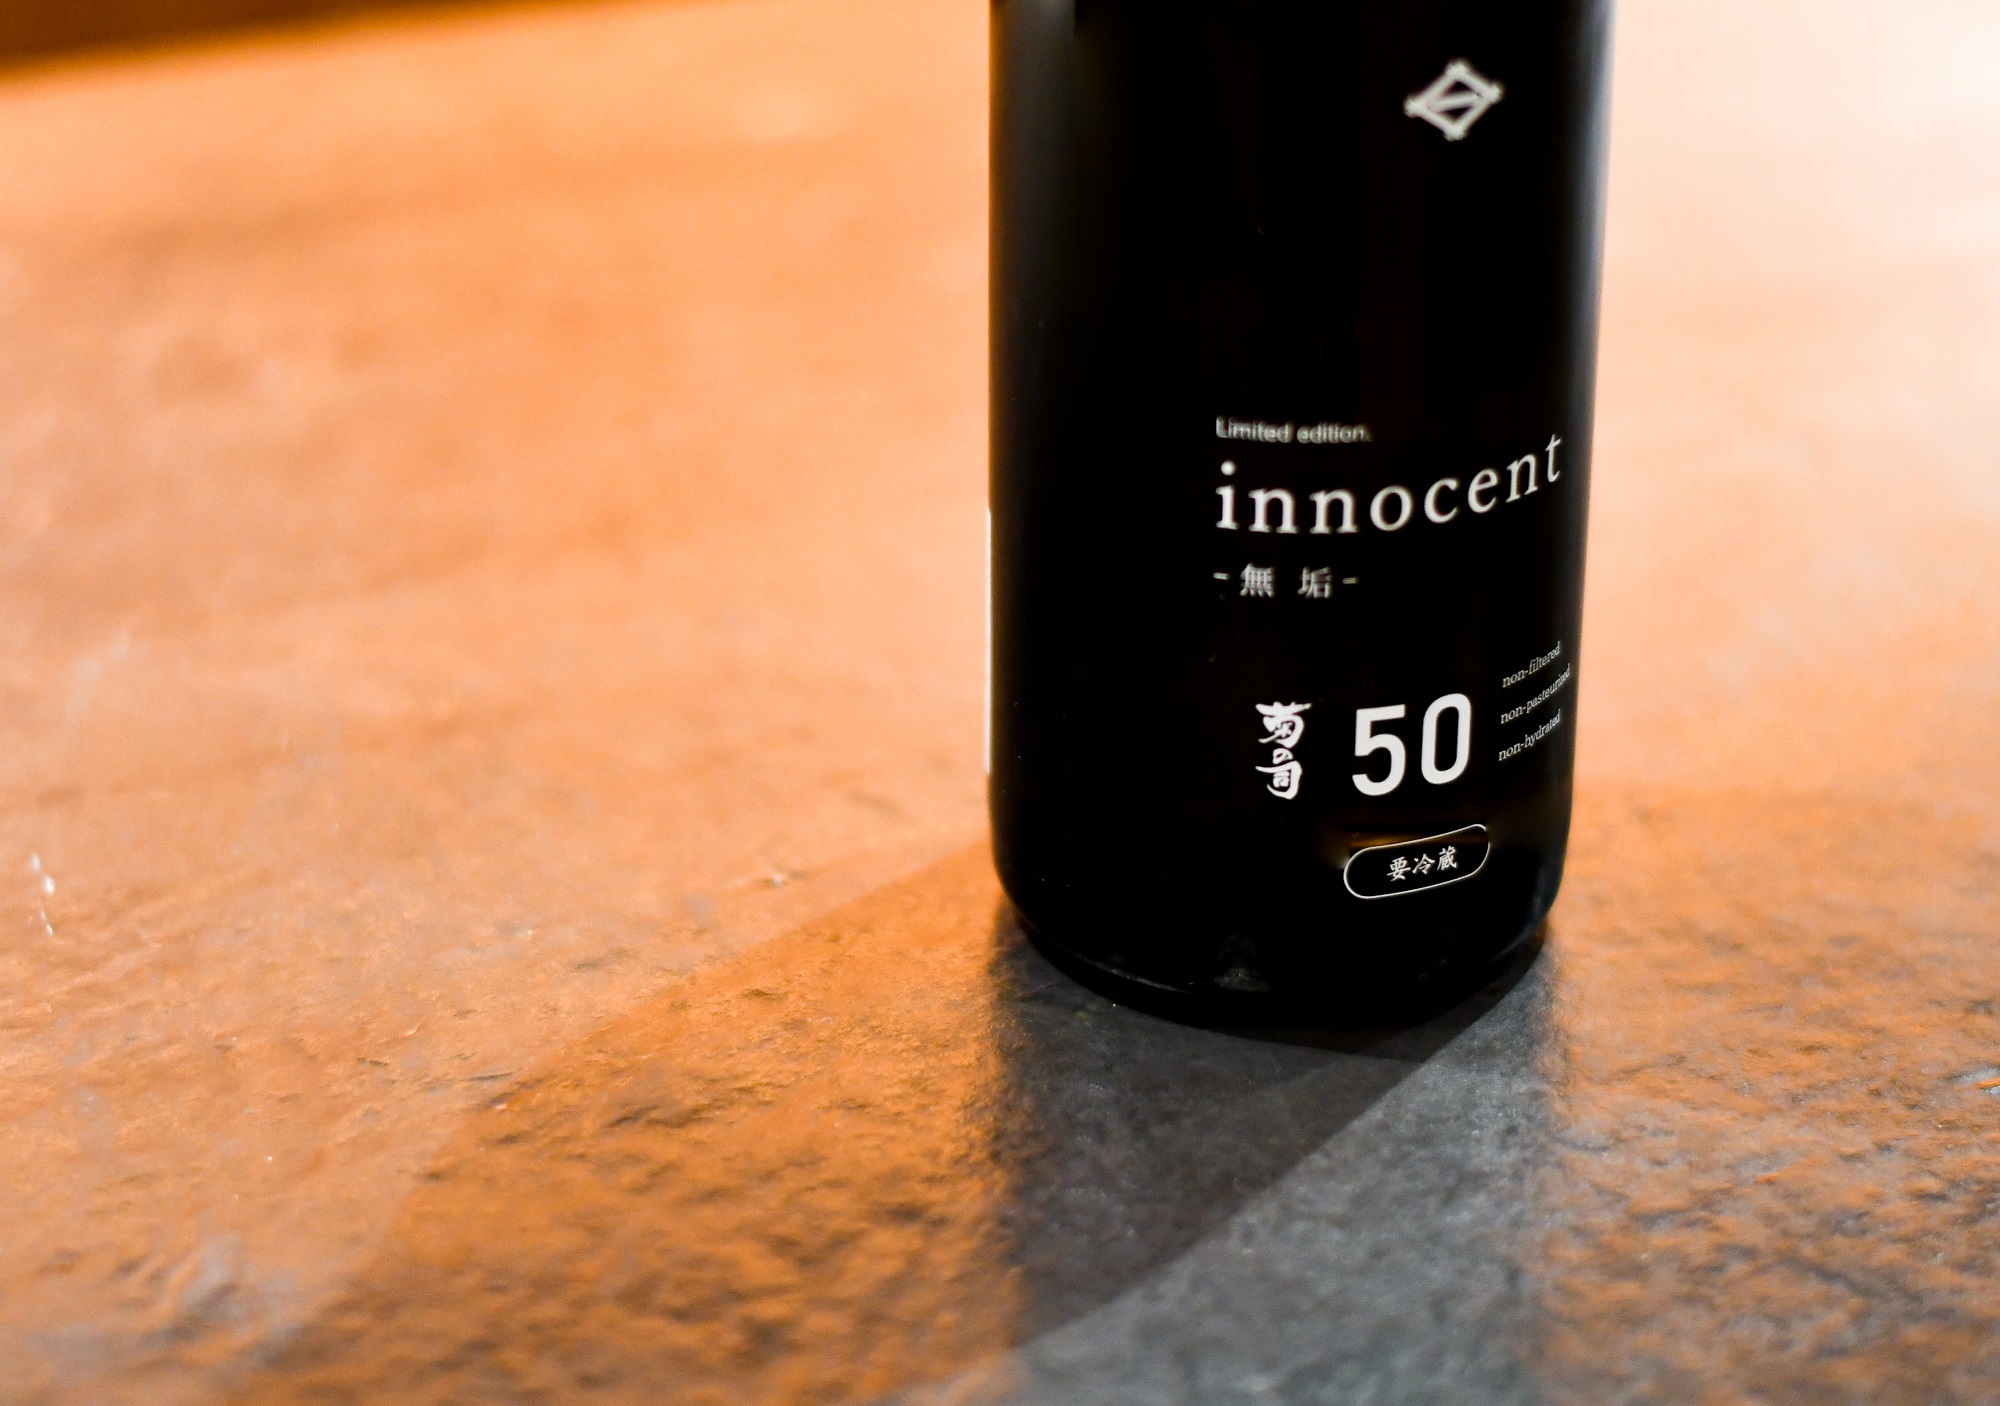 日本酒 Innocent 50 数量限定 生原酒10月22日 から全国一斉発売 菊の司酒造株式会社のプレスリリース